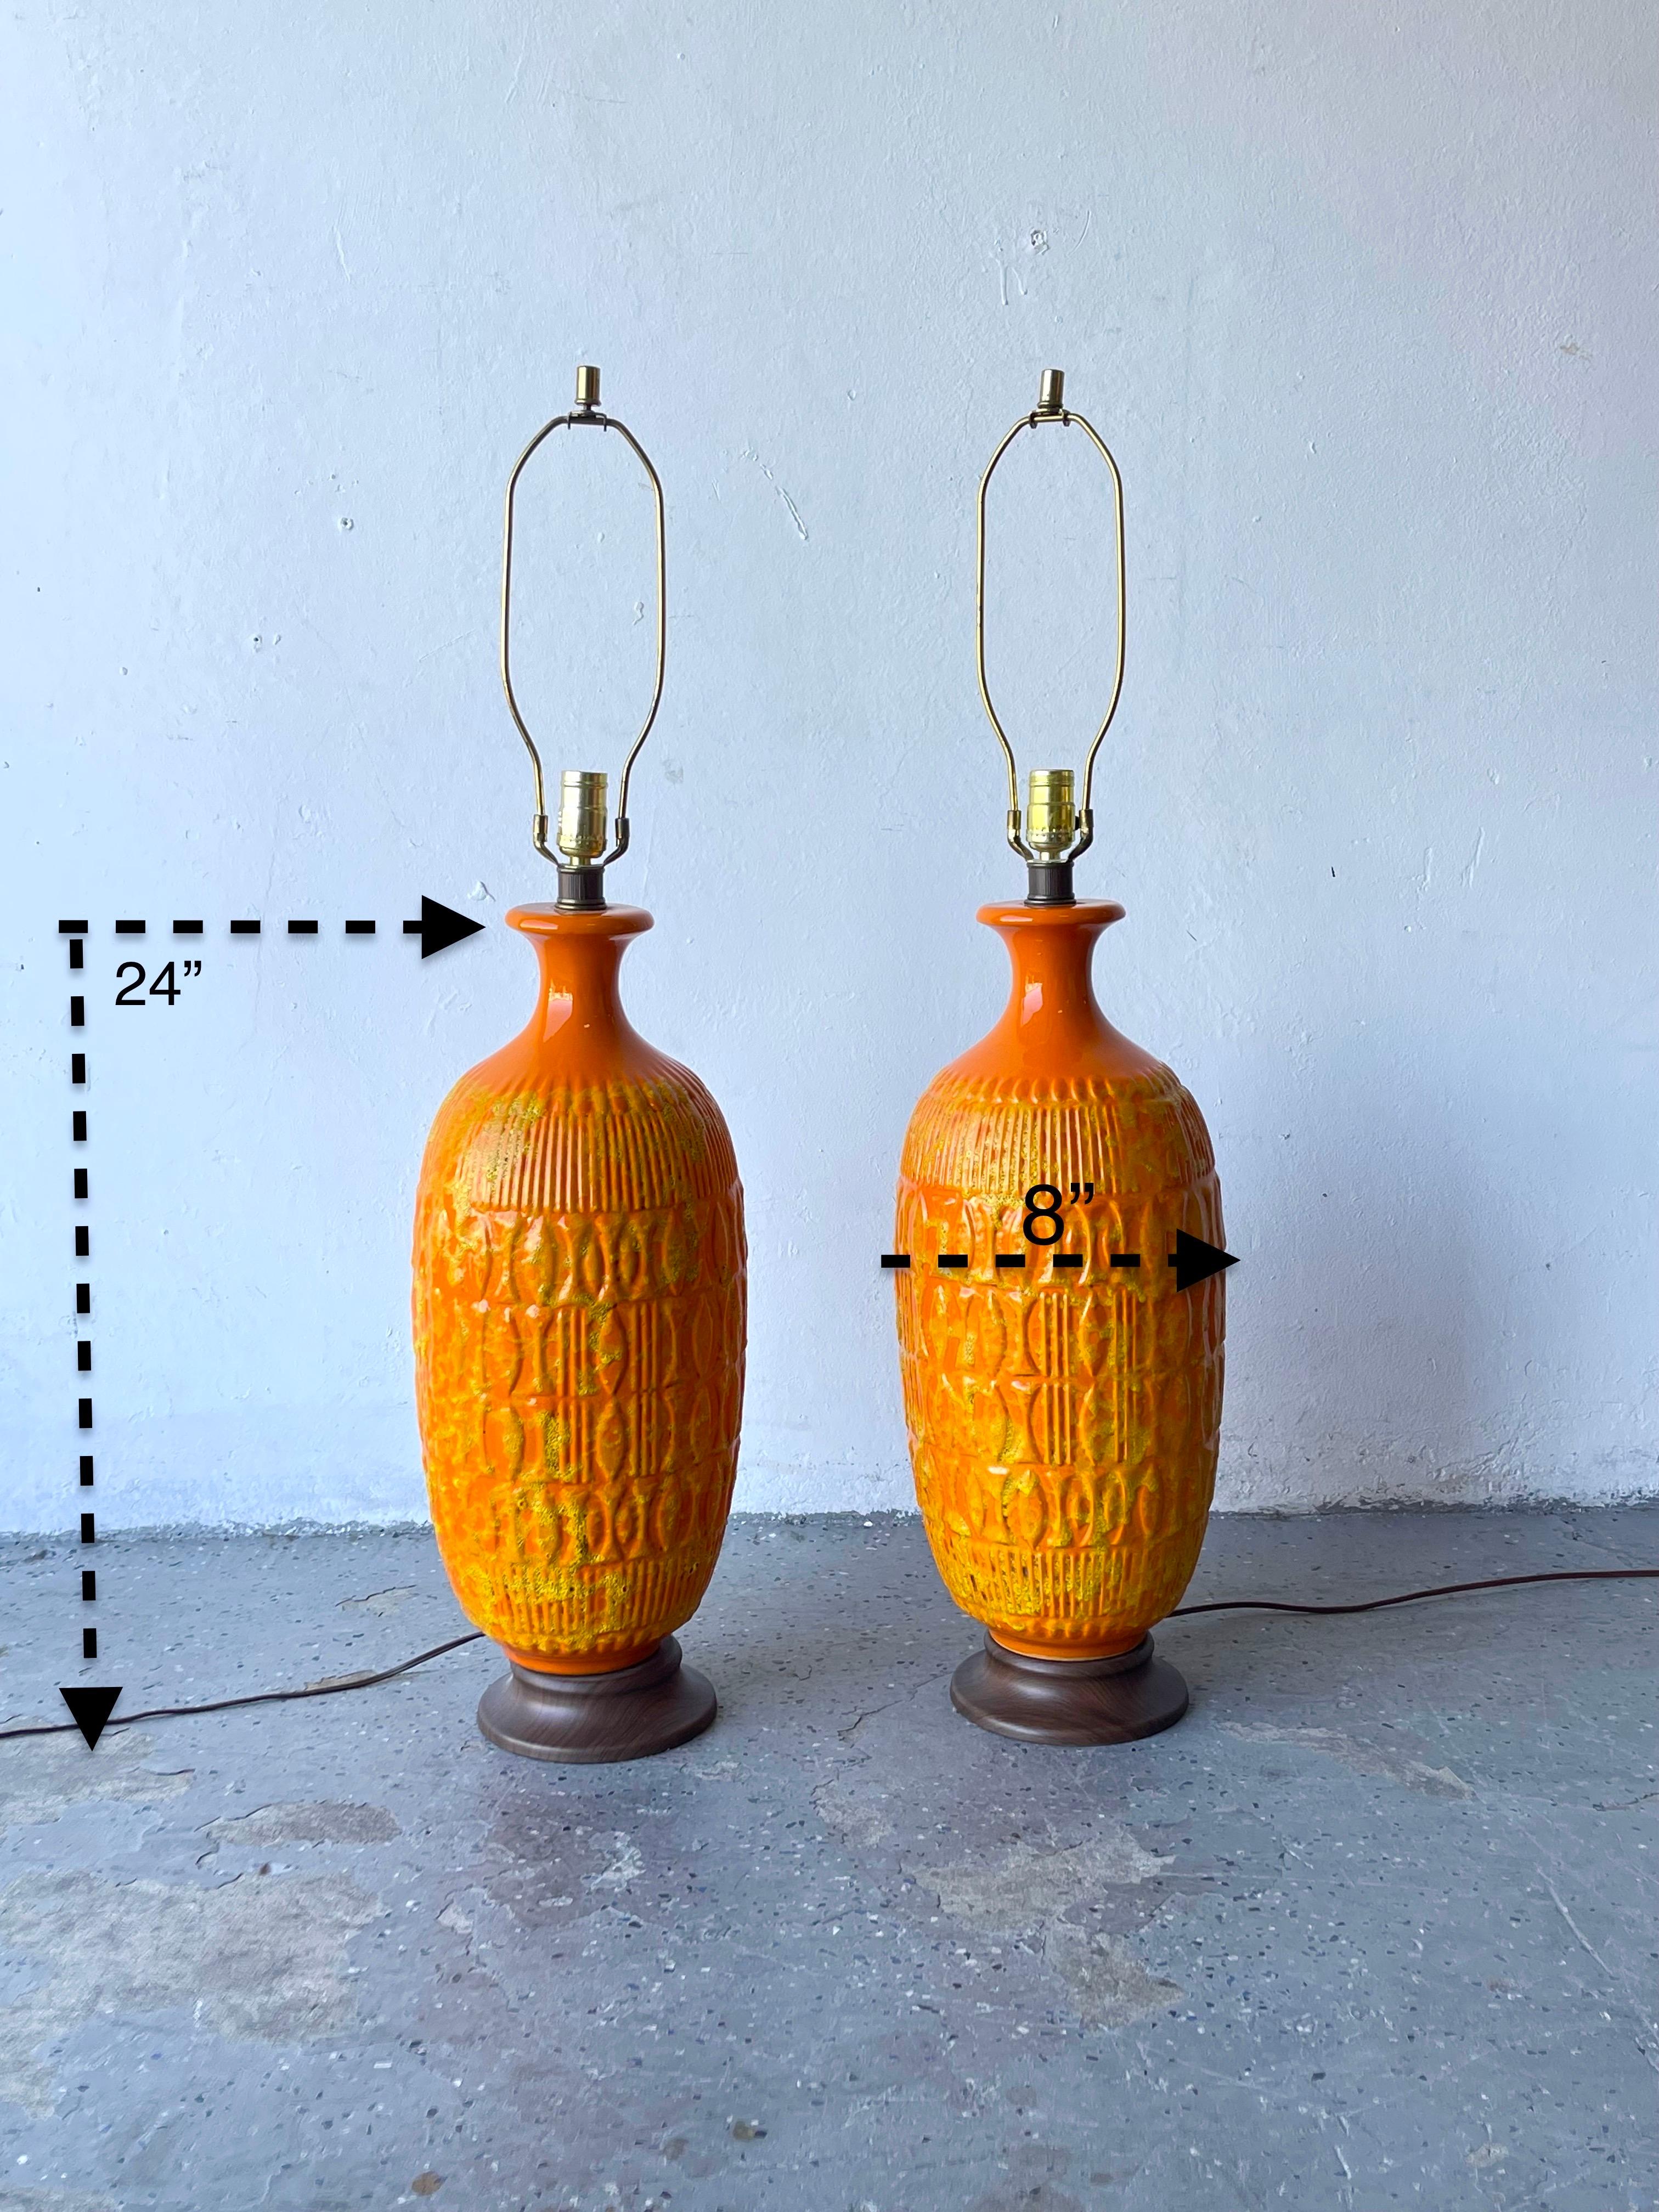 Une paire rare de lampes en céramique émaillée de MCM avec un motif géométrique. Orange et jaune vifs. Probablement d'origine ouest-allemande, peut-être Scheurich, Keramik, ils sont de grande taille. Les récipients en céramique mesurent 24 pouces de